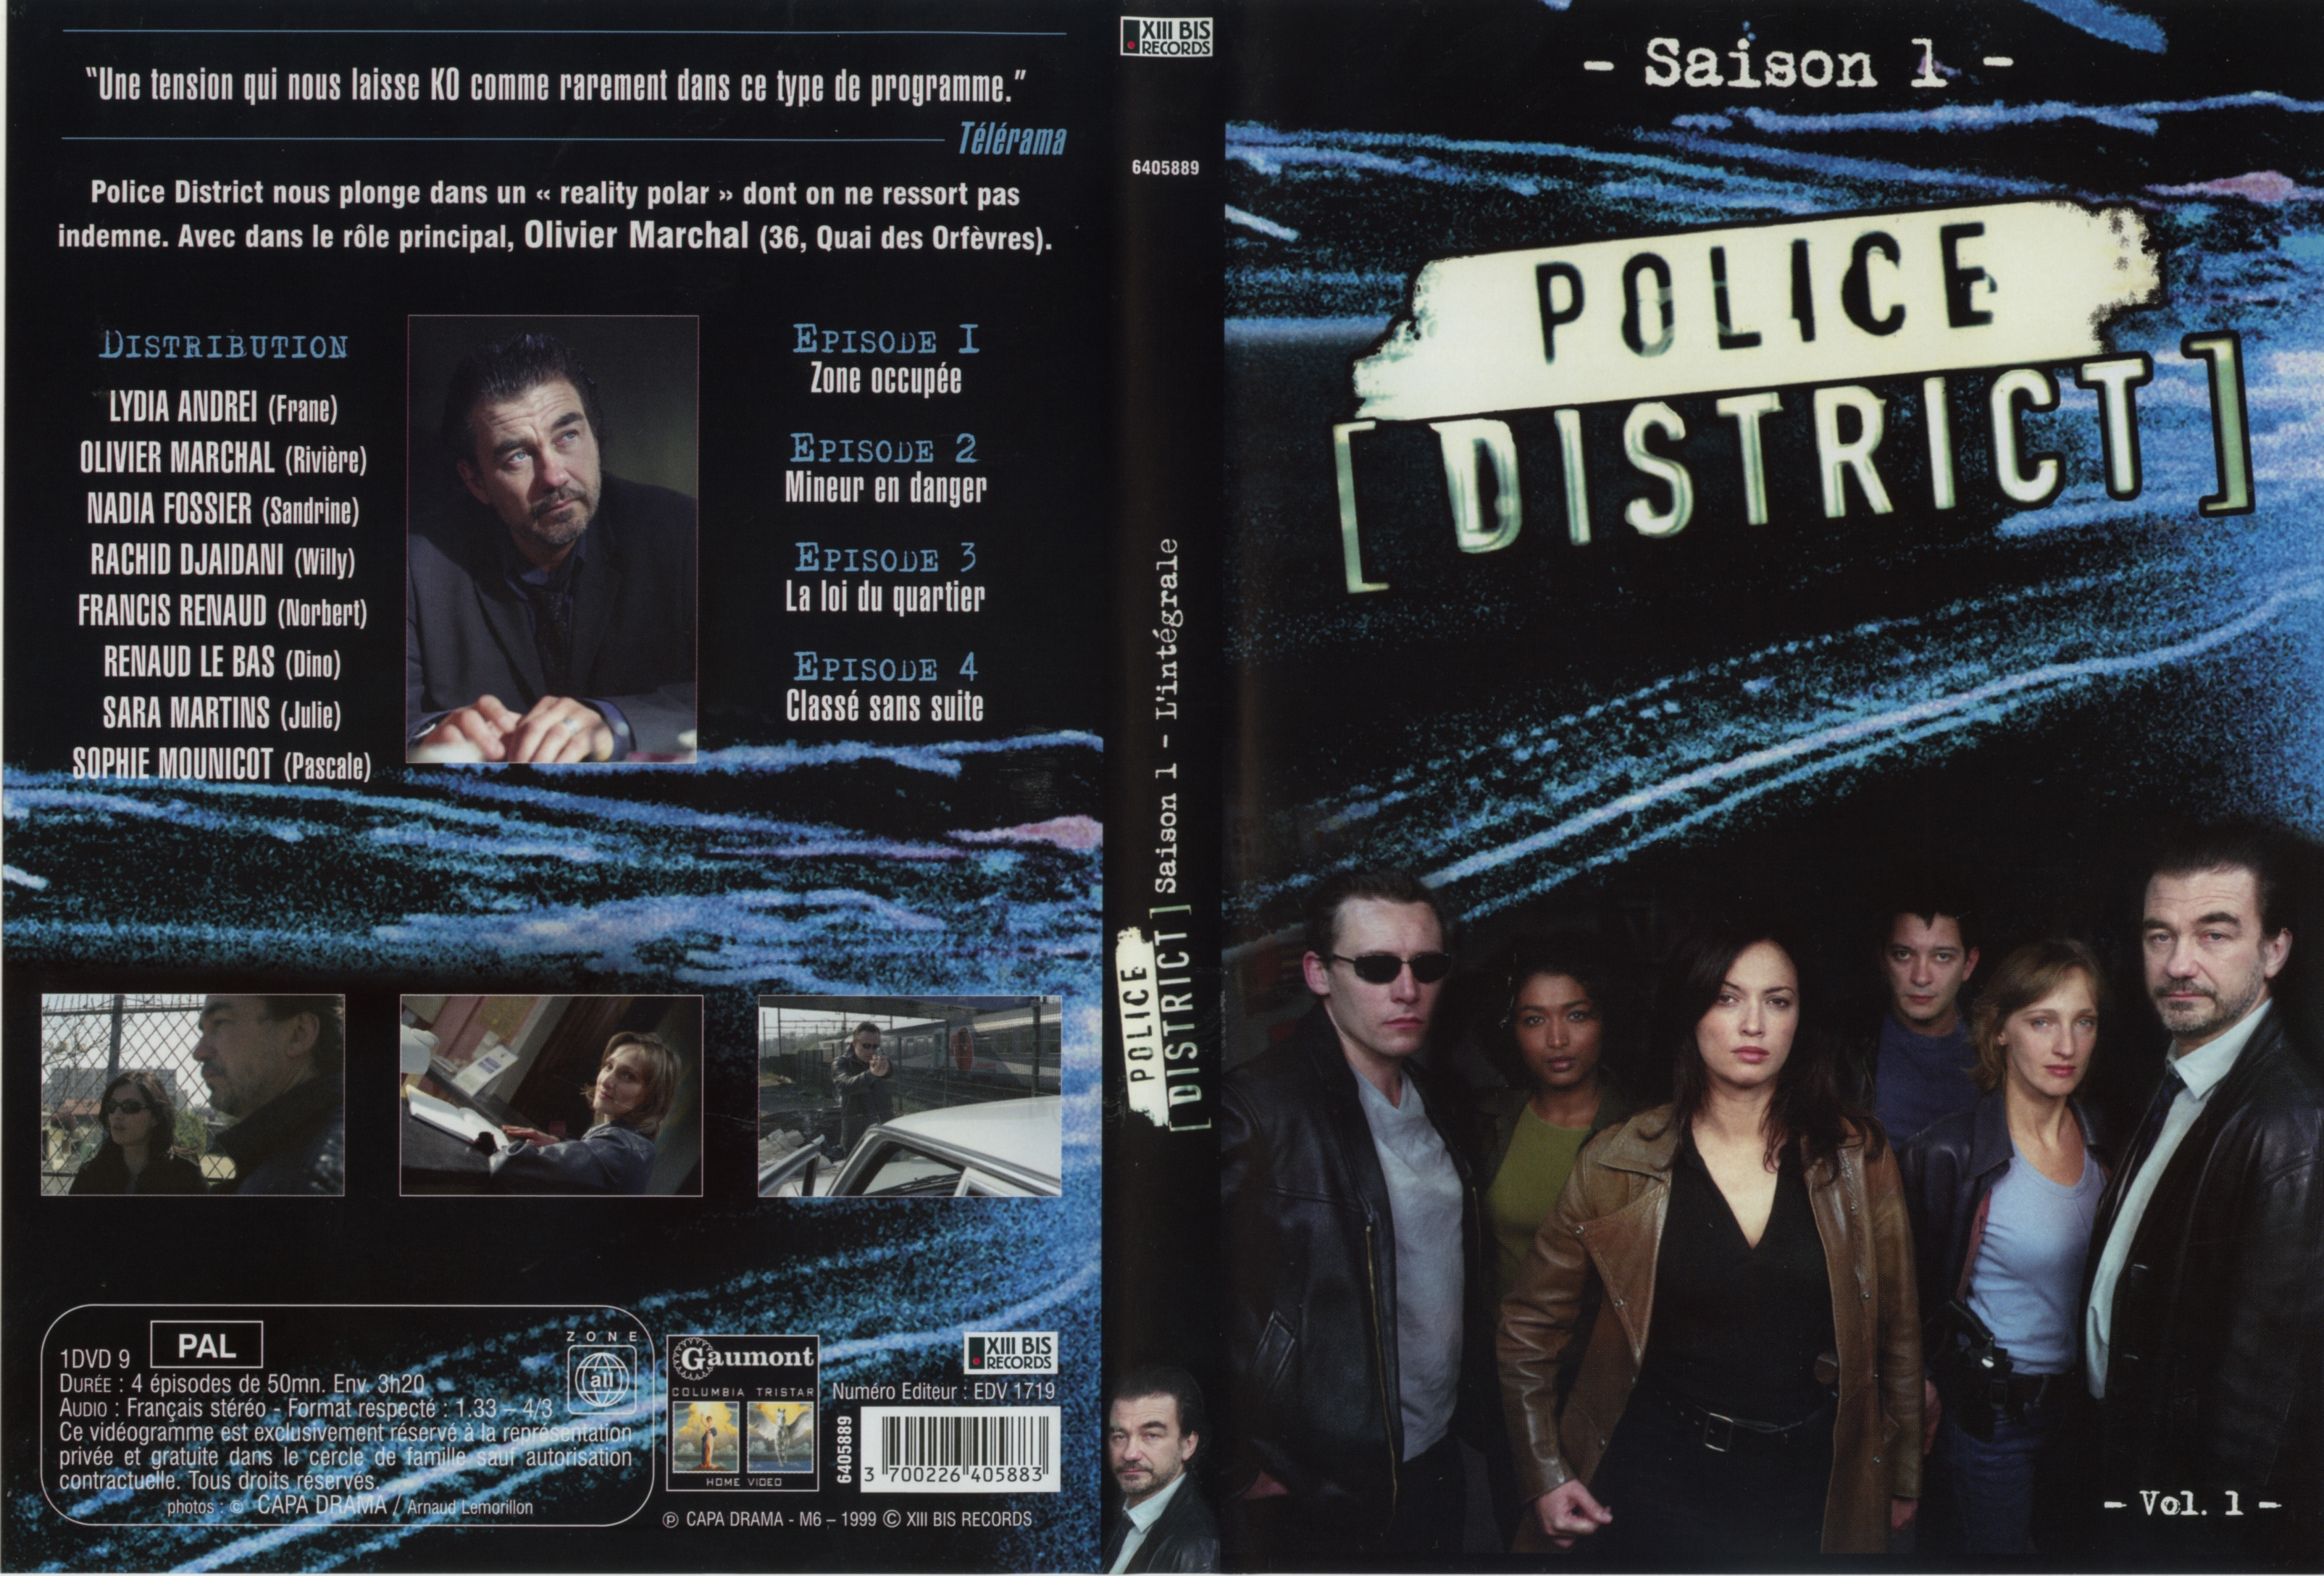 Jaquette DVD Police District Saison 1 vol 1